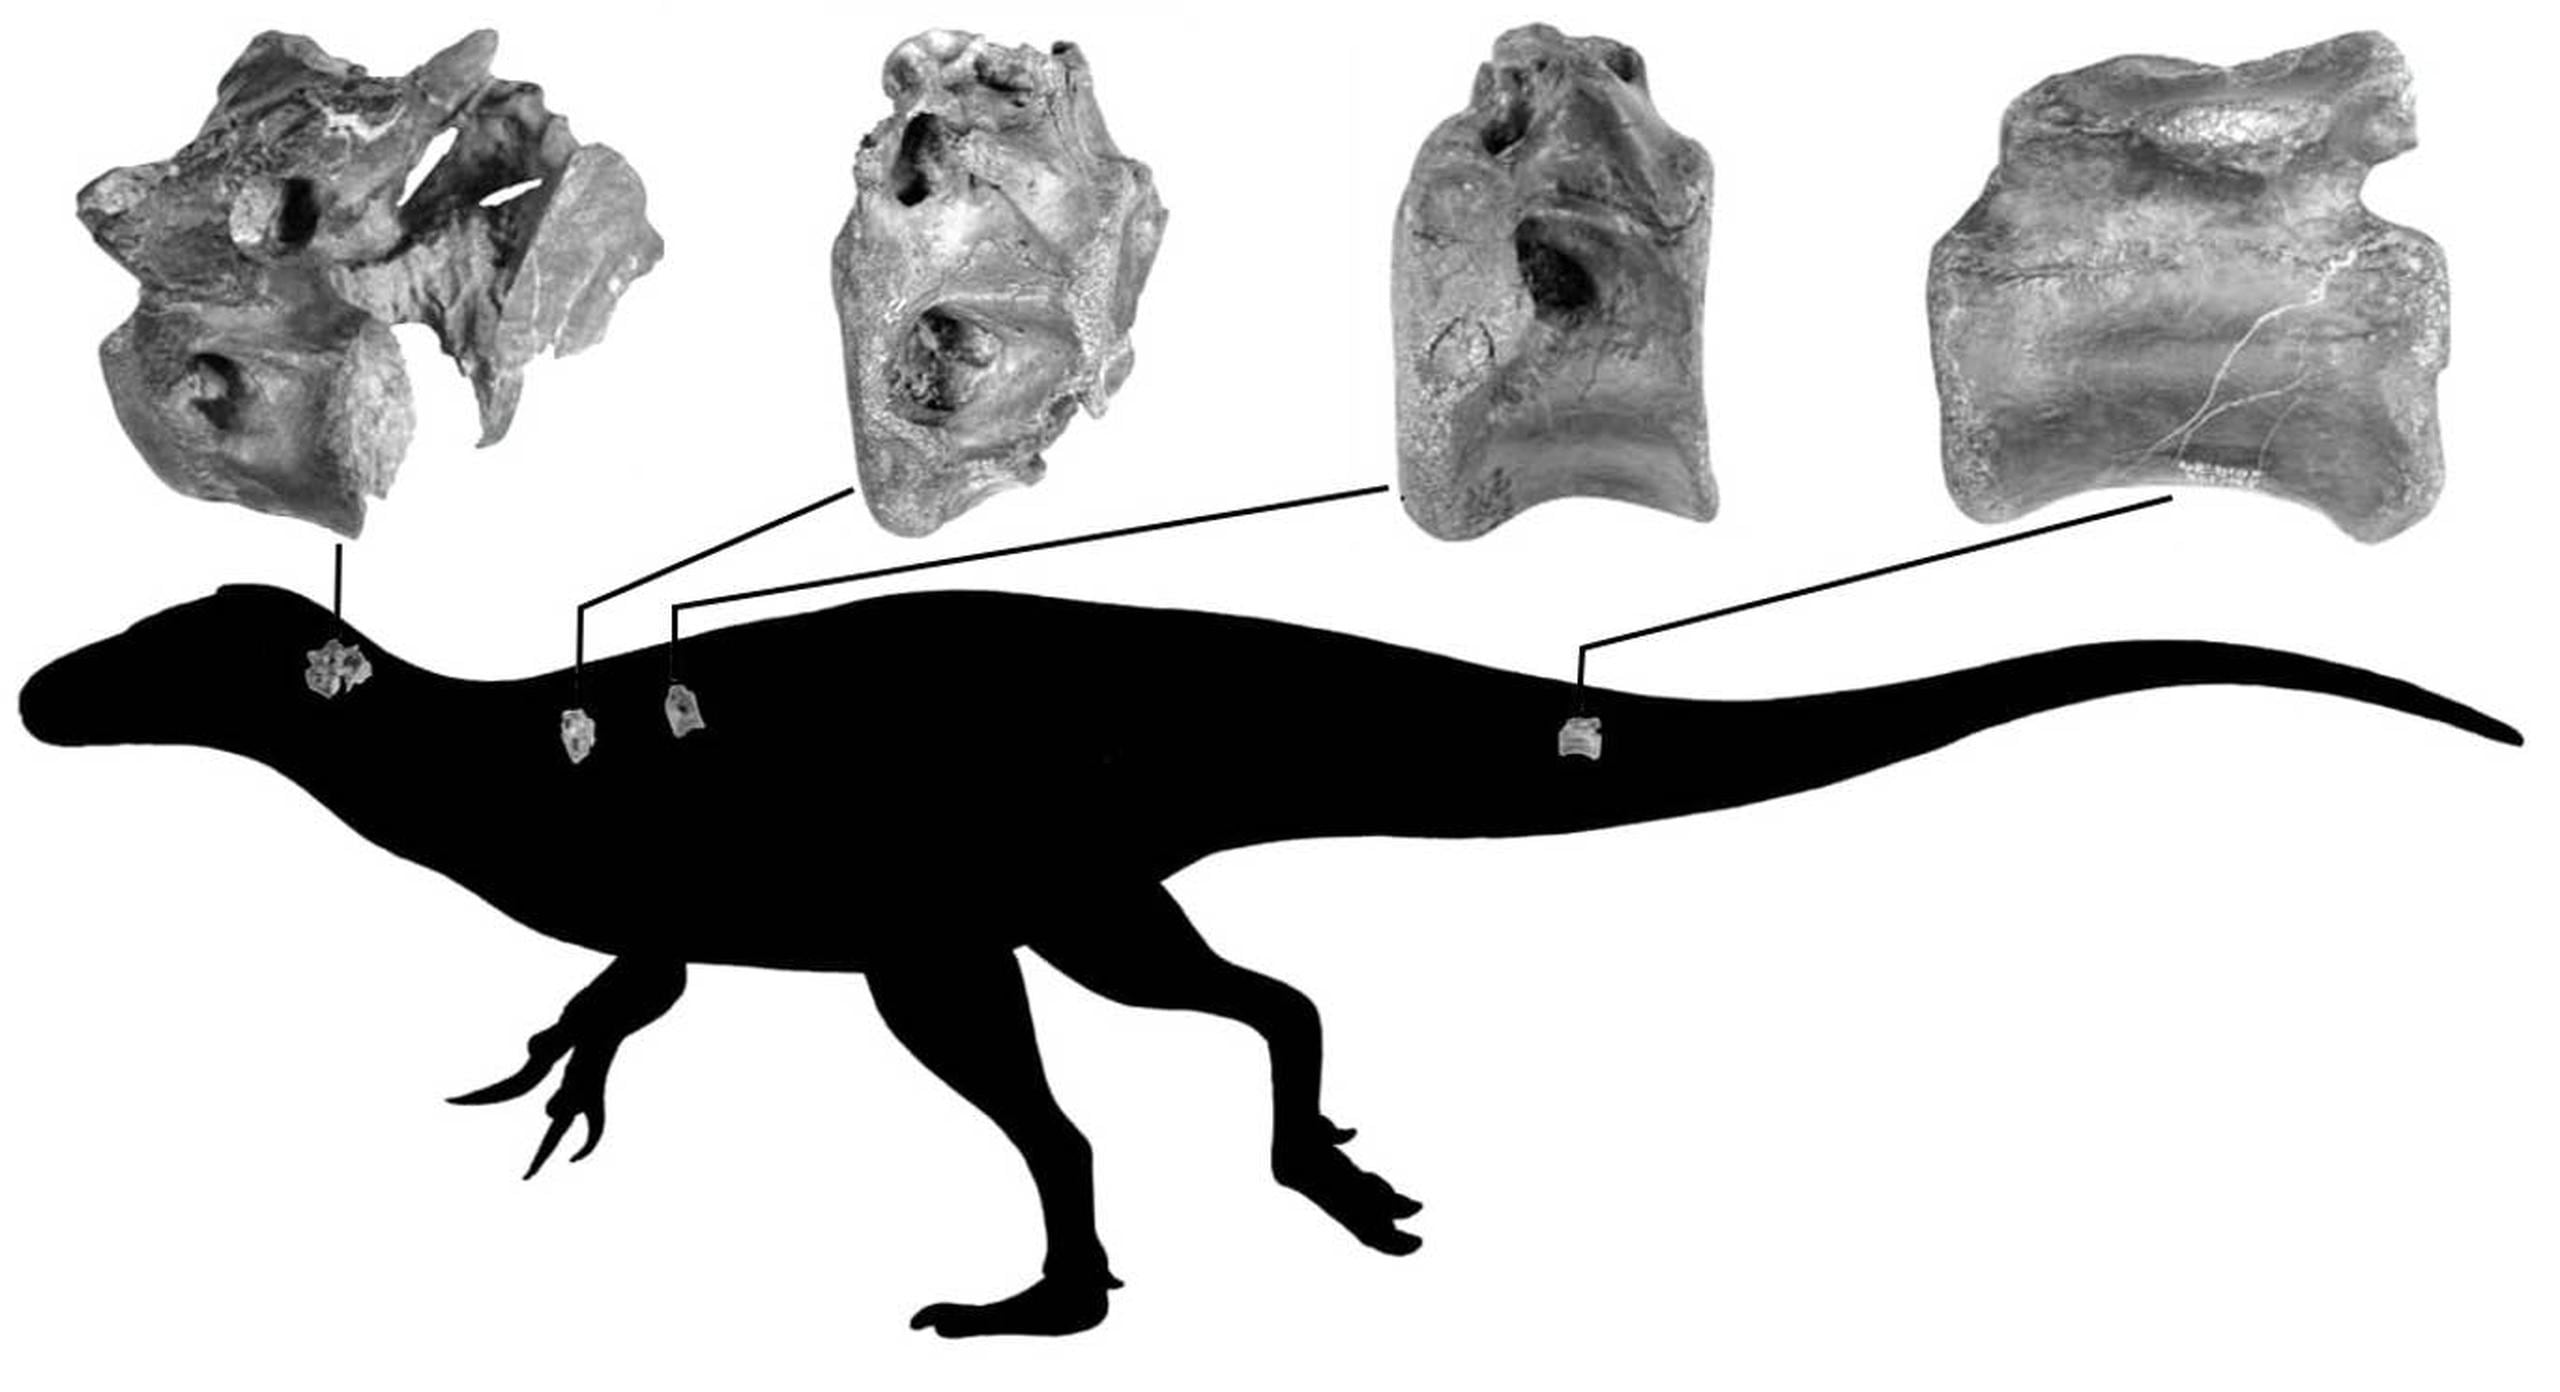 Silueta del dinosaurio mostrando la posición de los huesos. (Darren Naish vía Southampton University)